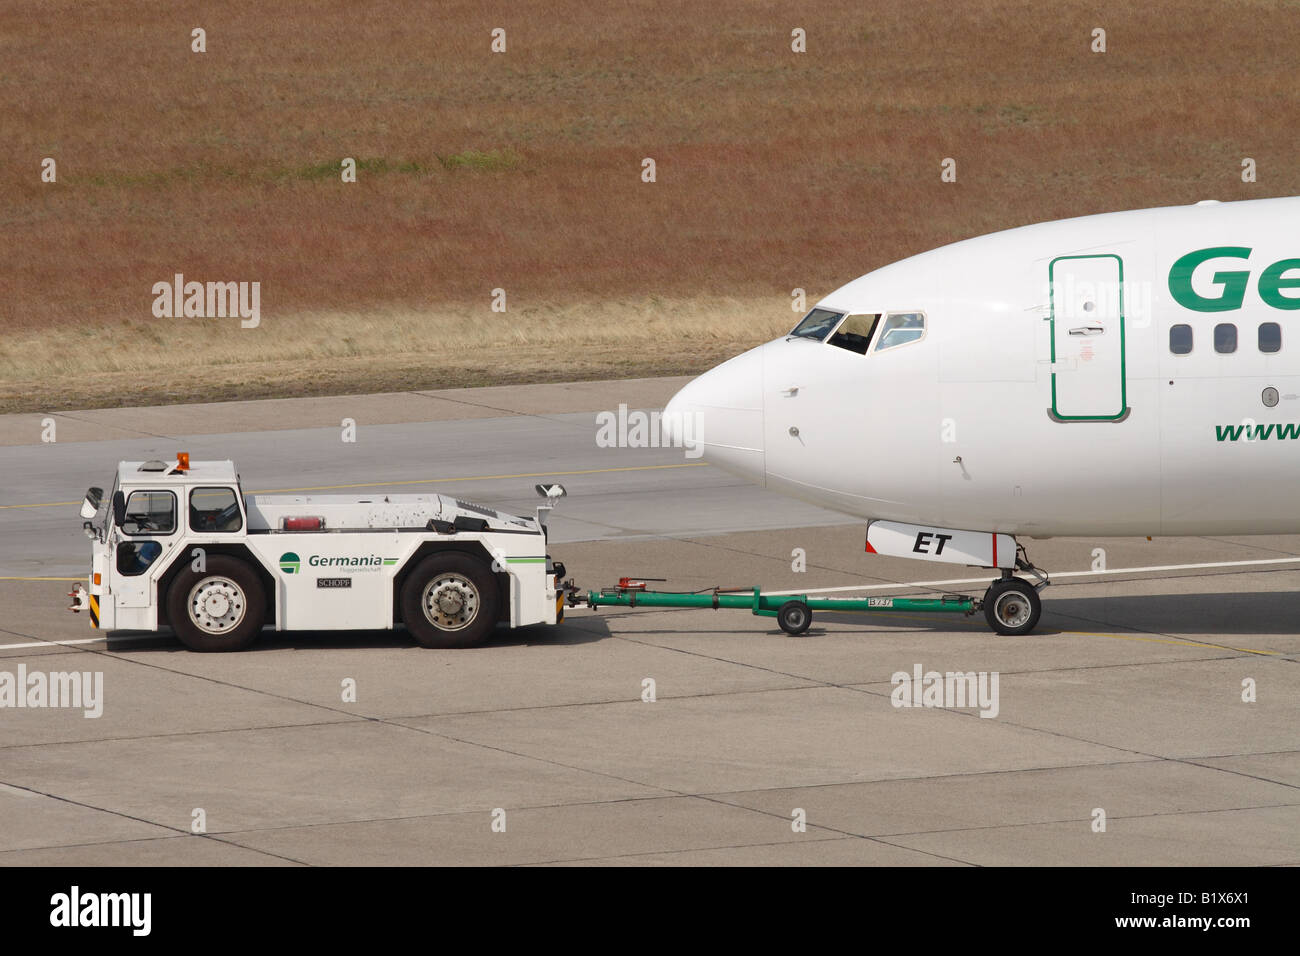 Germania airline Boeing 737 aereo jet aerei essendo spinto da un aeroporto rimorchiatore di traino del veicolo trattore Foto Stock